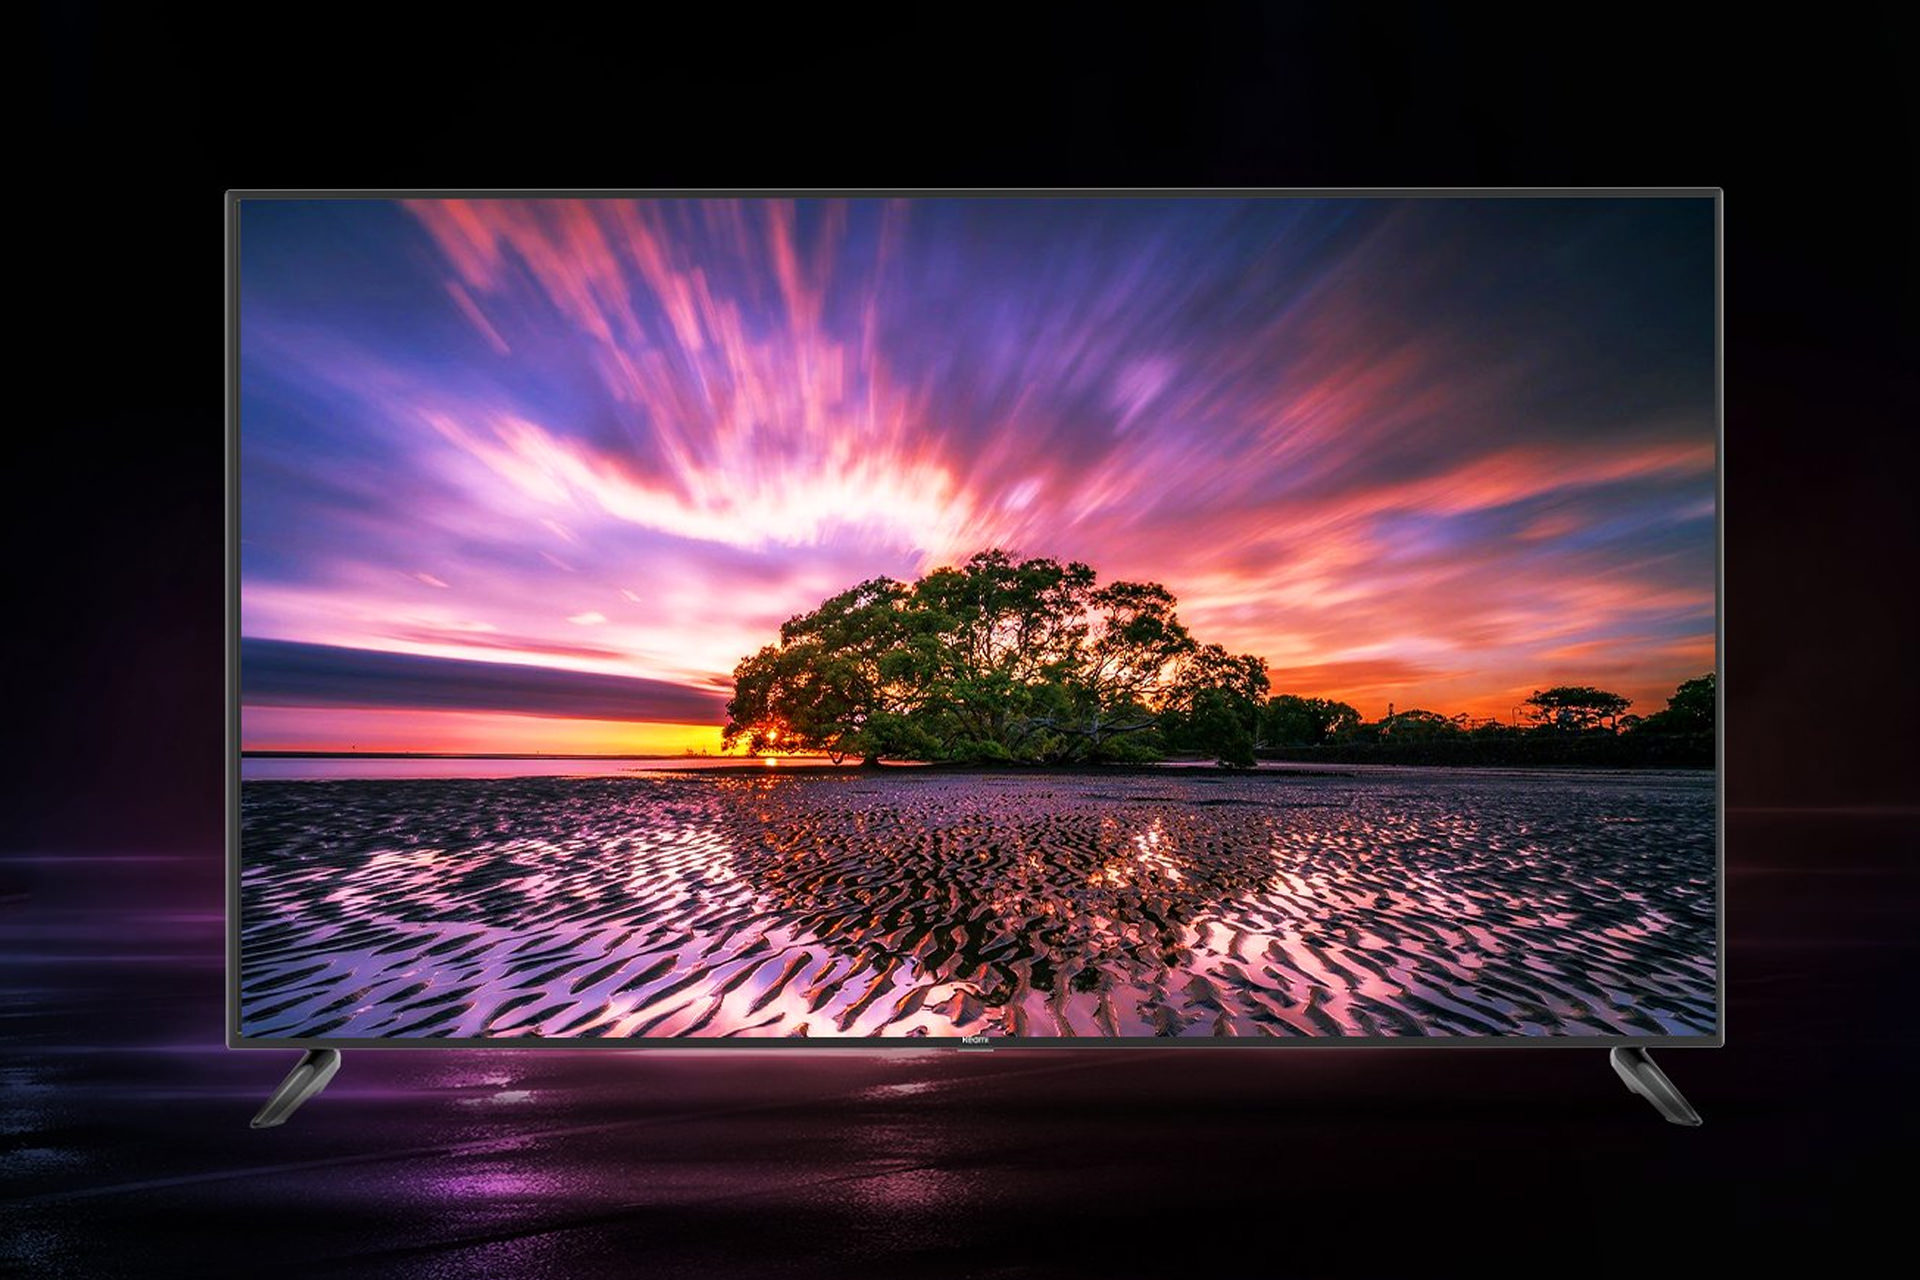 نمای جلو تلویزیون ردمی X65 درحال نمایش منظره درخت و آسمان غروب